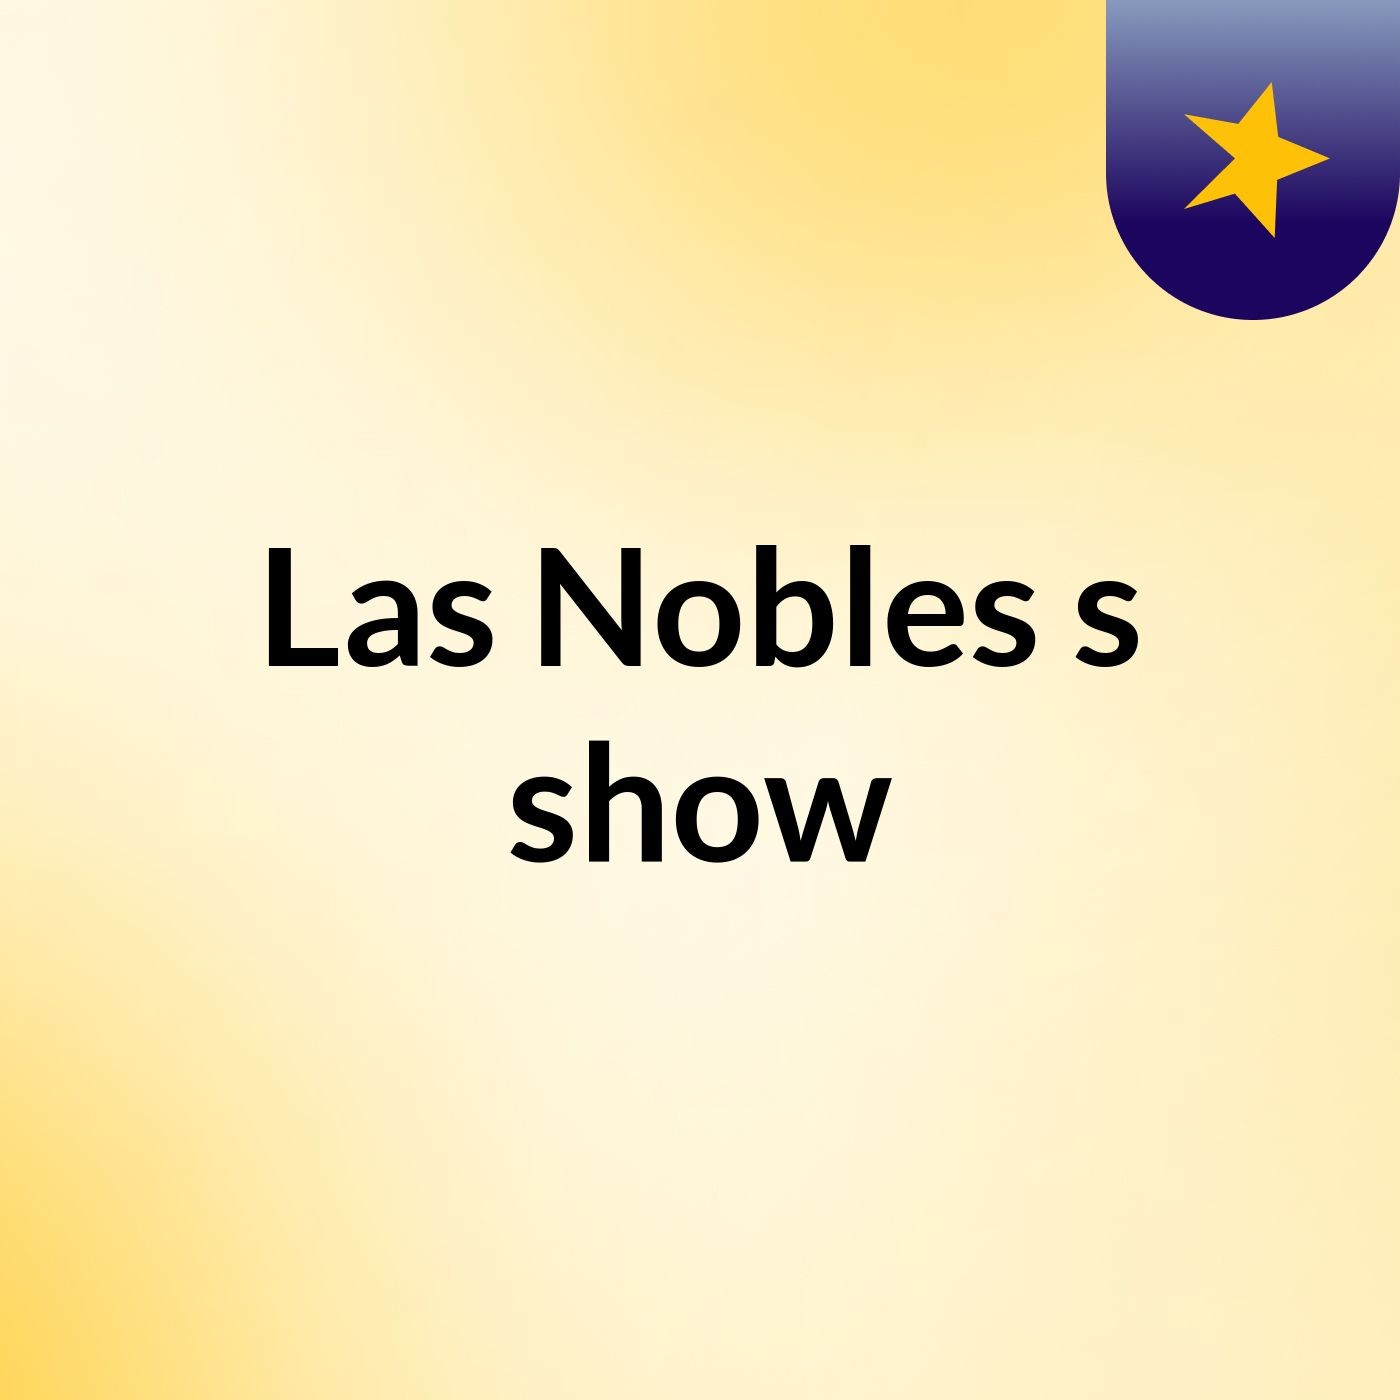 Las Nobles's show